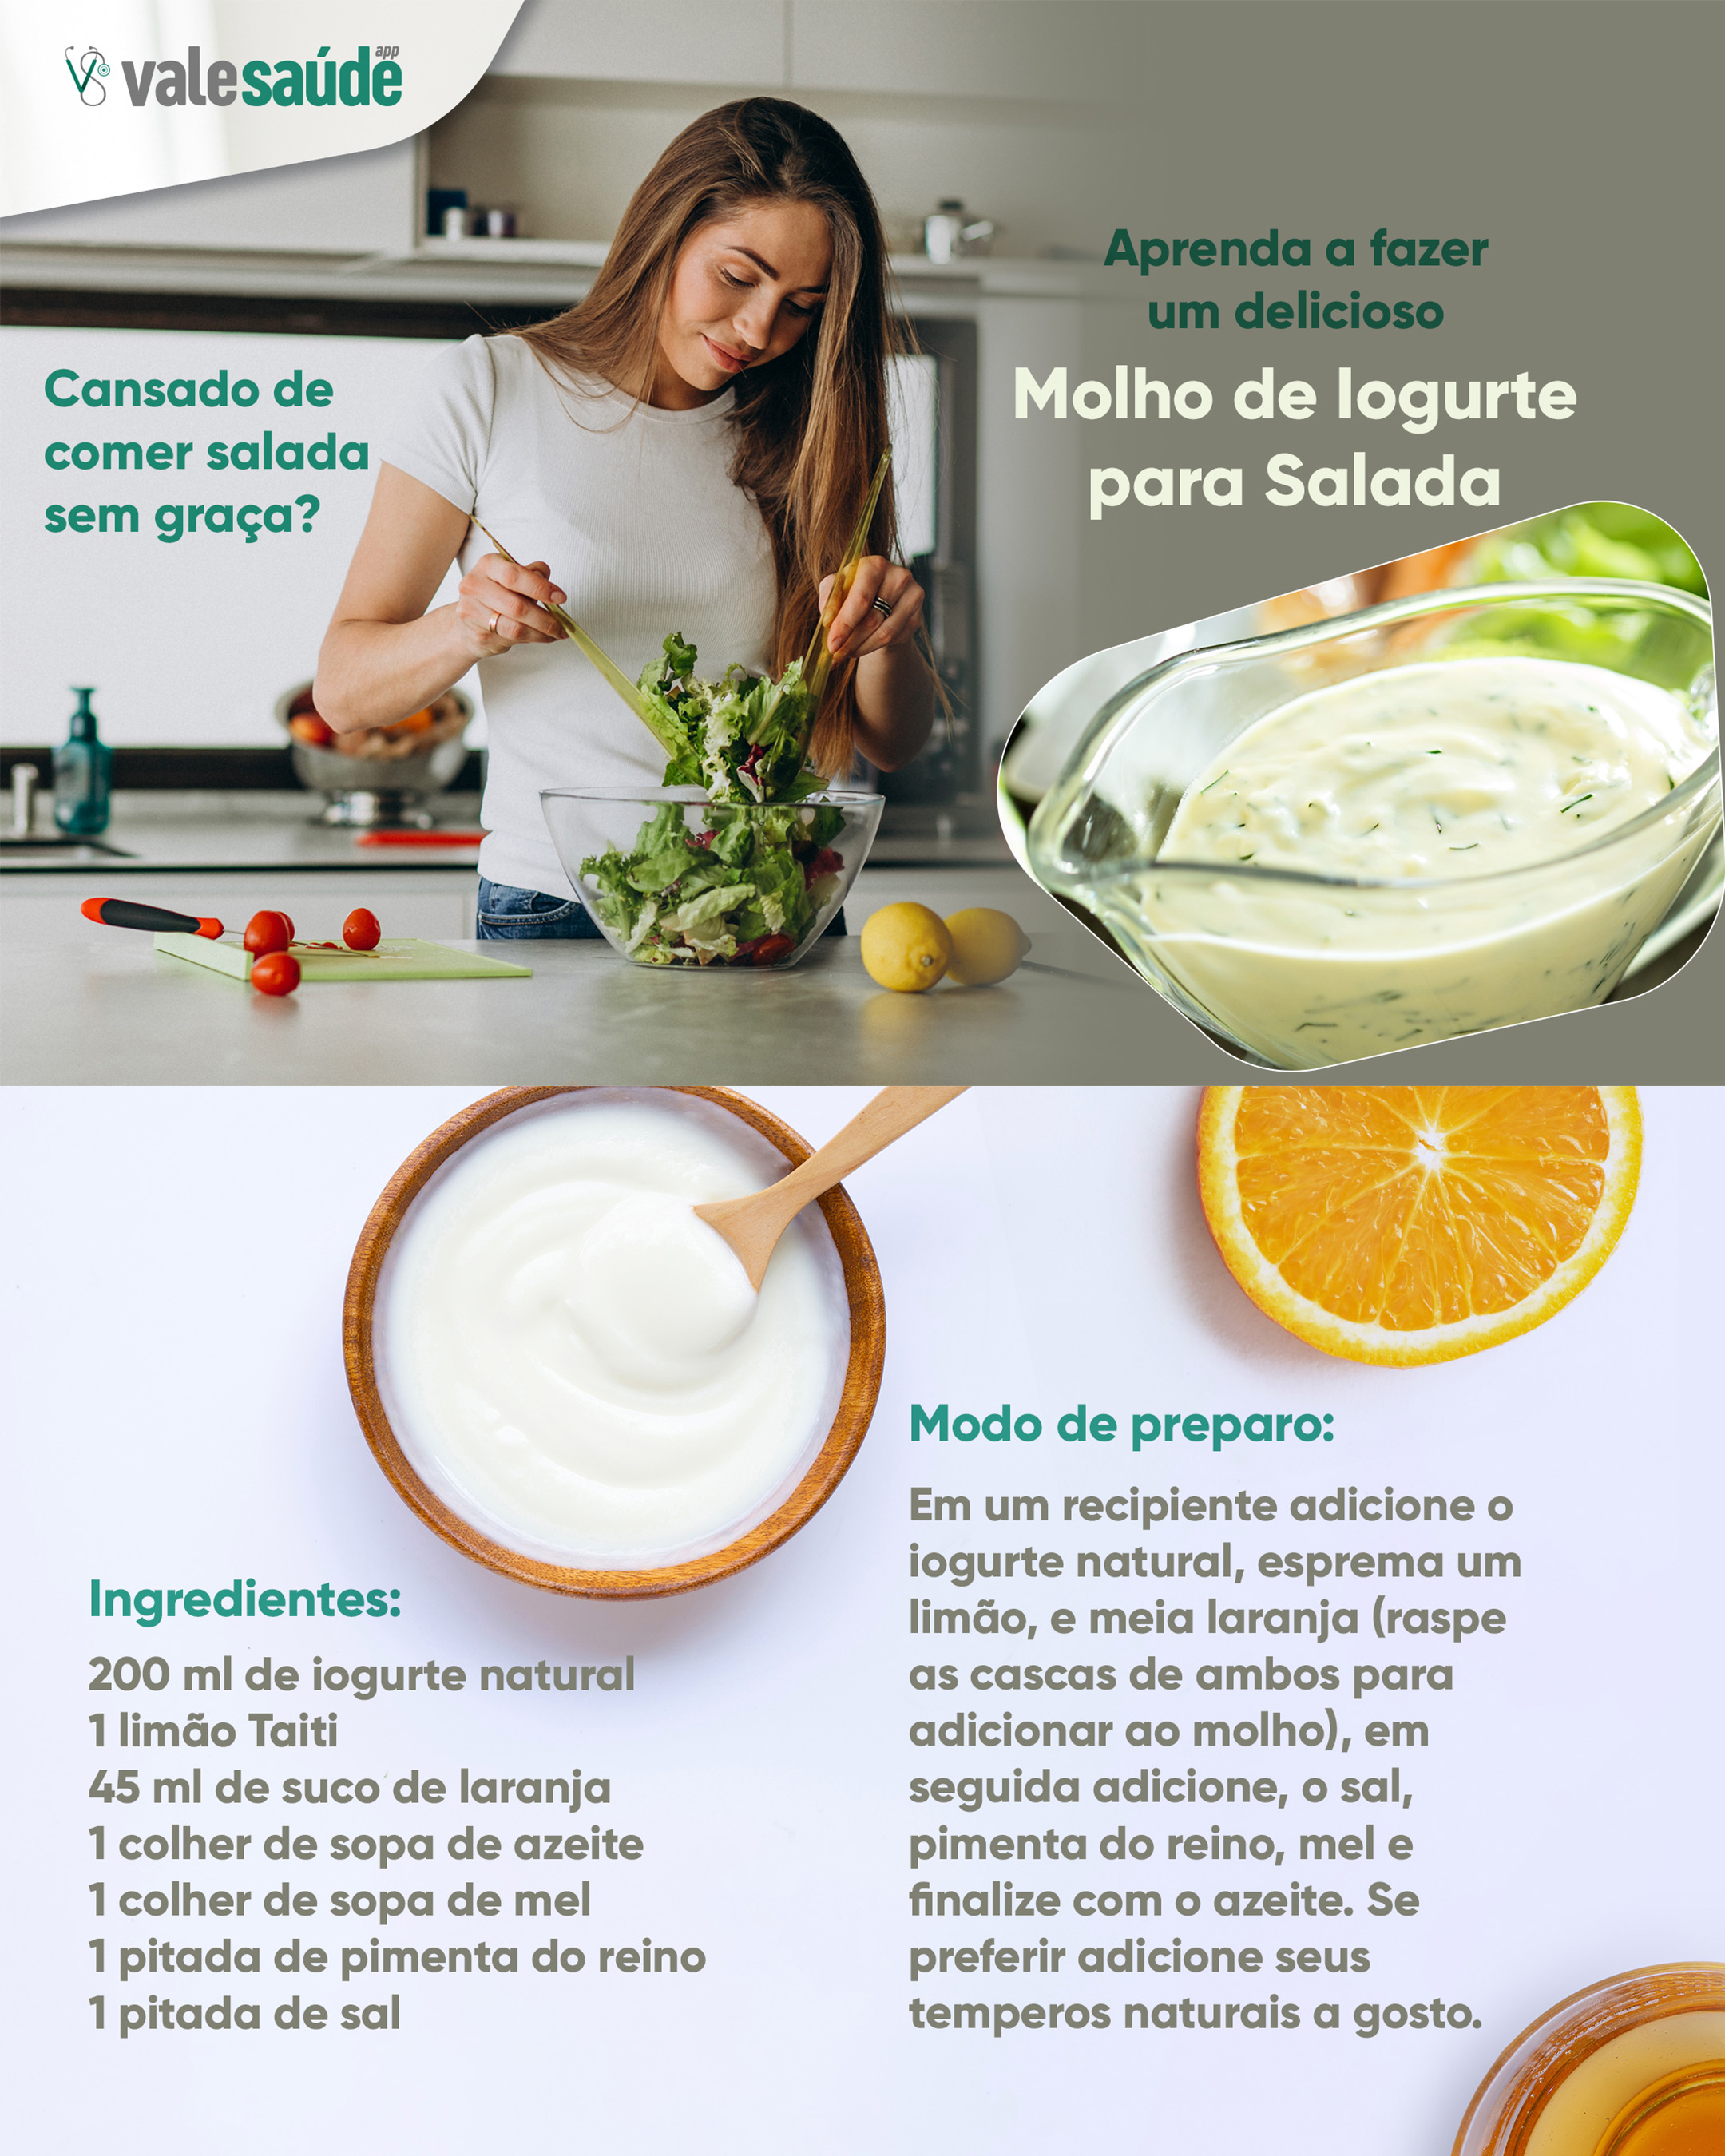 Aprenda a fazer um delicioso molho de Iogurte para Salada